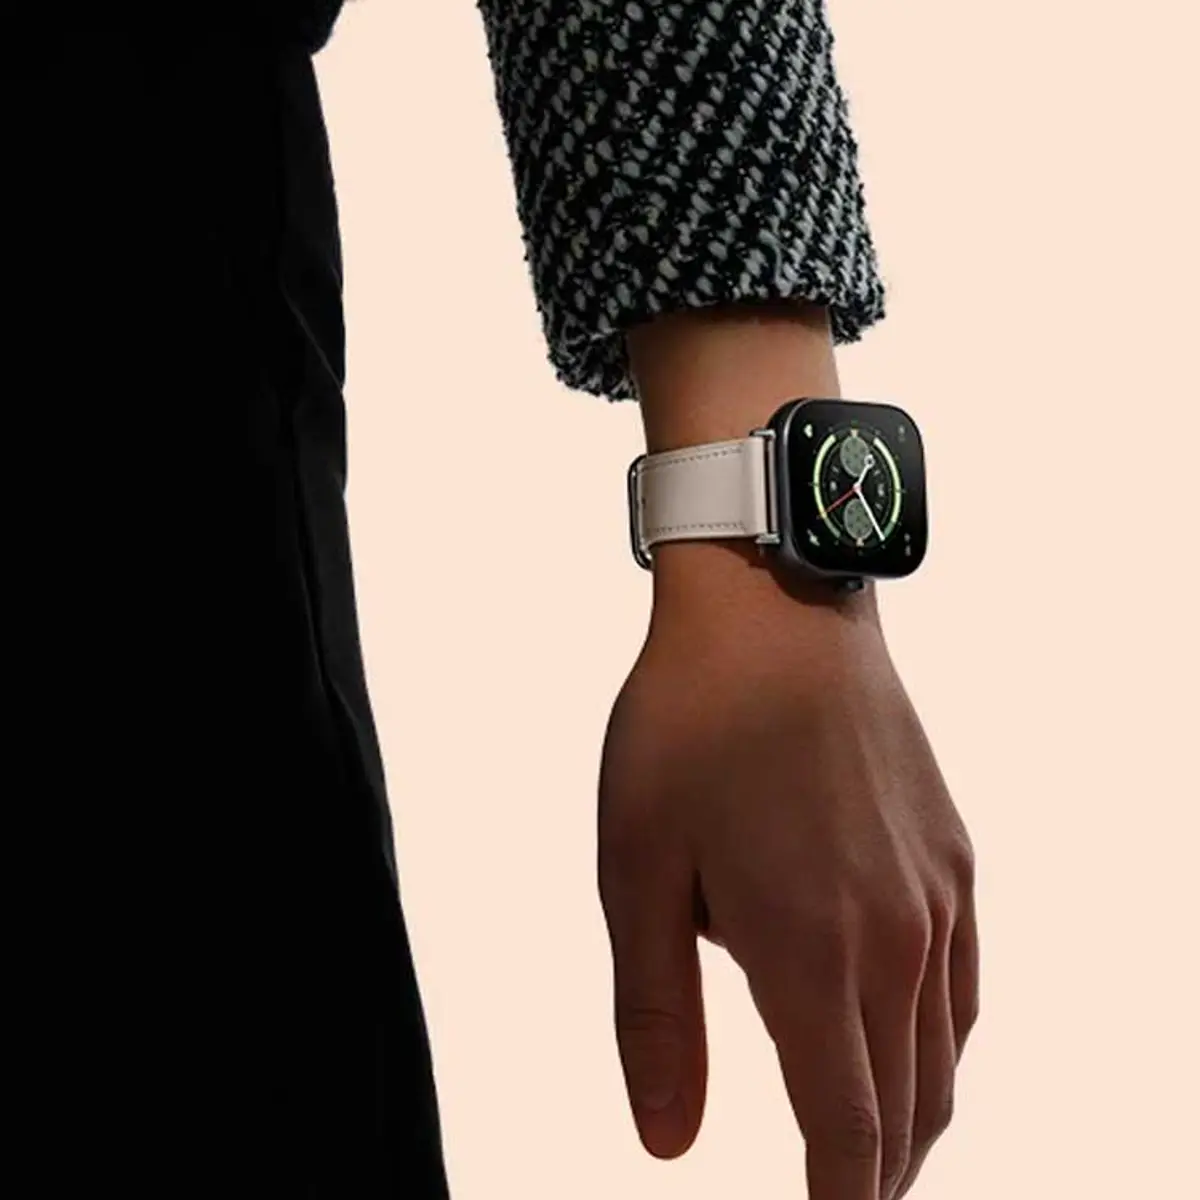 El nuevo reloj barato de Xiaomi llega a España: así es el Redmi Watch 3